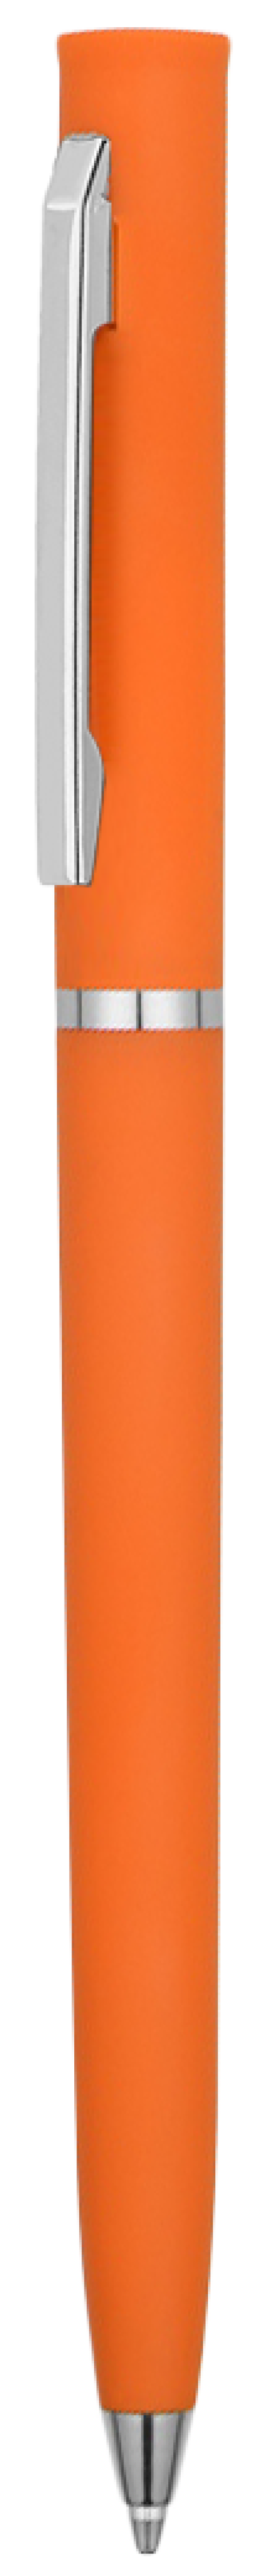 Ручка EUROPA SOFT Оранжевая 2026.05